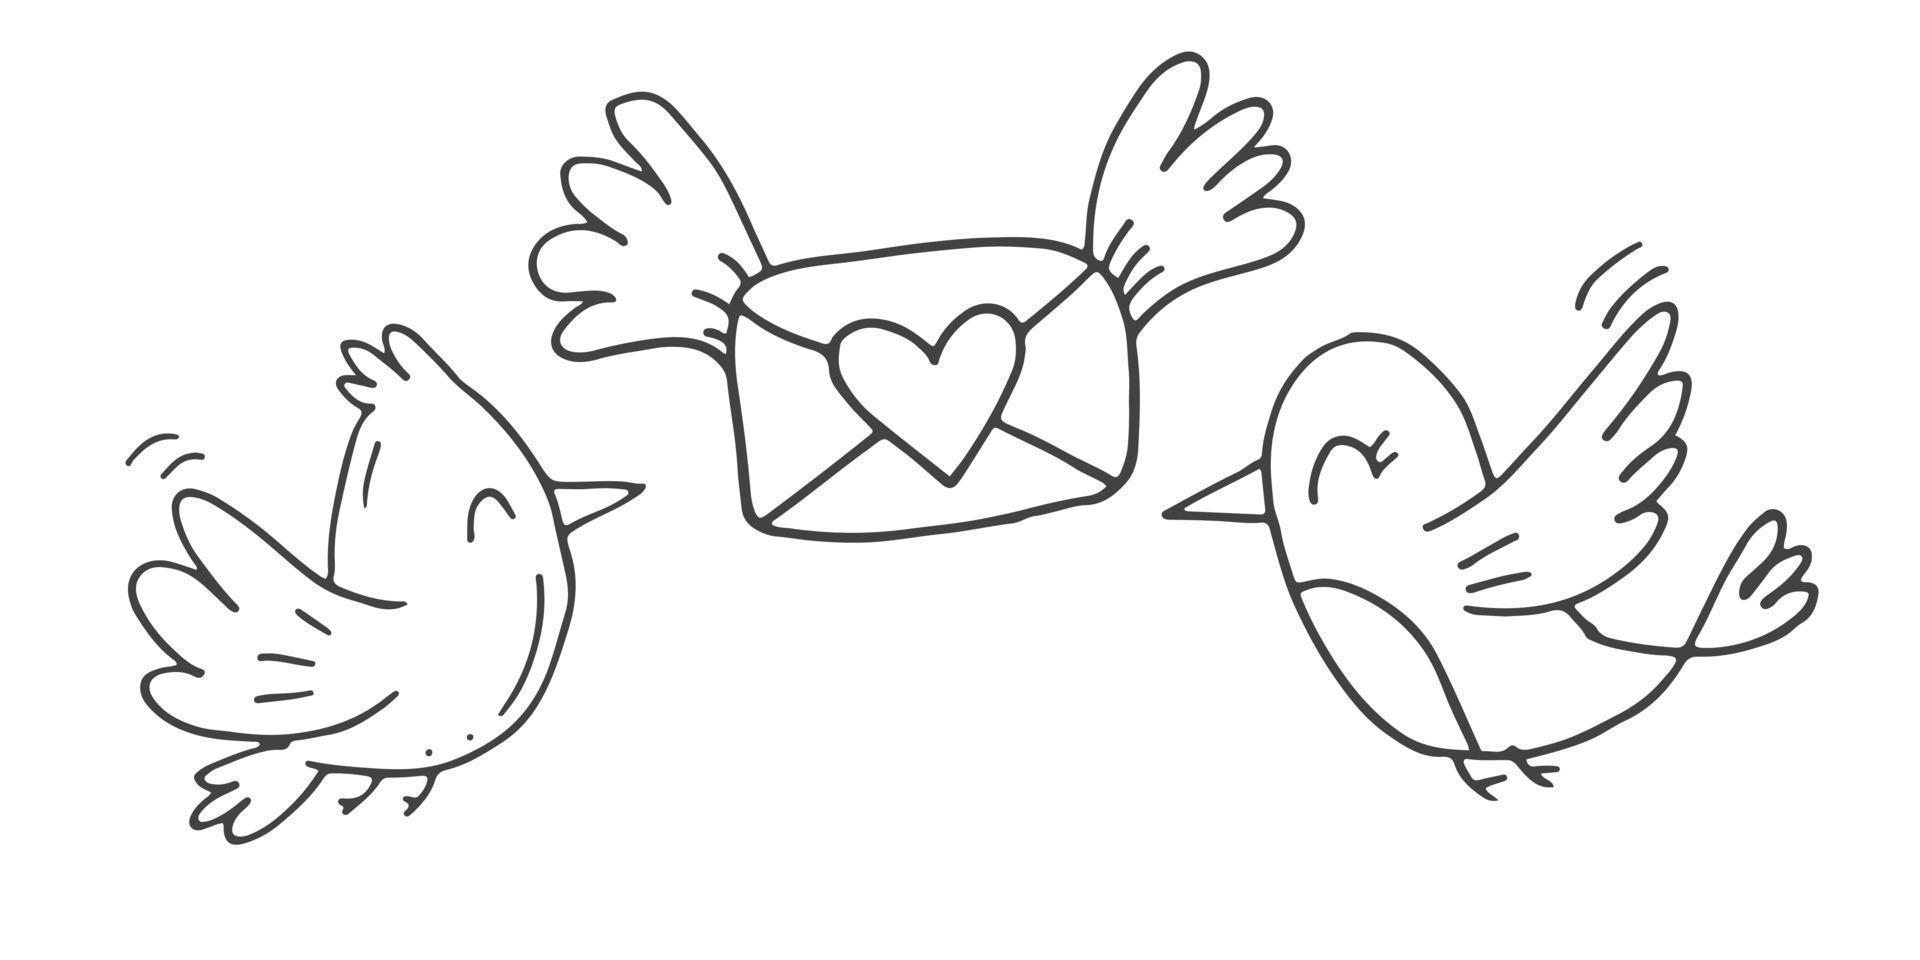 ensemble d'éléments de doodle mignons dessinés à la main sur l'amour. autocollants de message pour les applications. icônes pour la saint valentin, les événements romantiques et le mariage. tourtereaux avec une enveloppe avec des coeurs et une lettre d'amour. vecteur